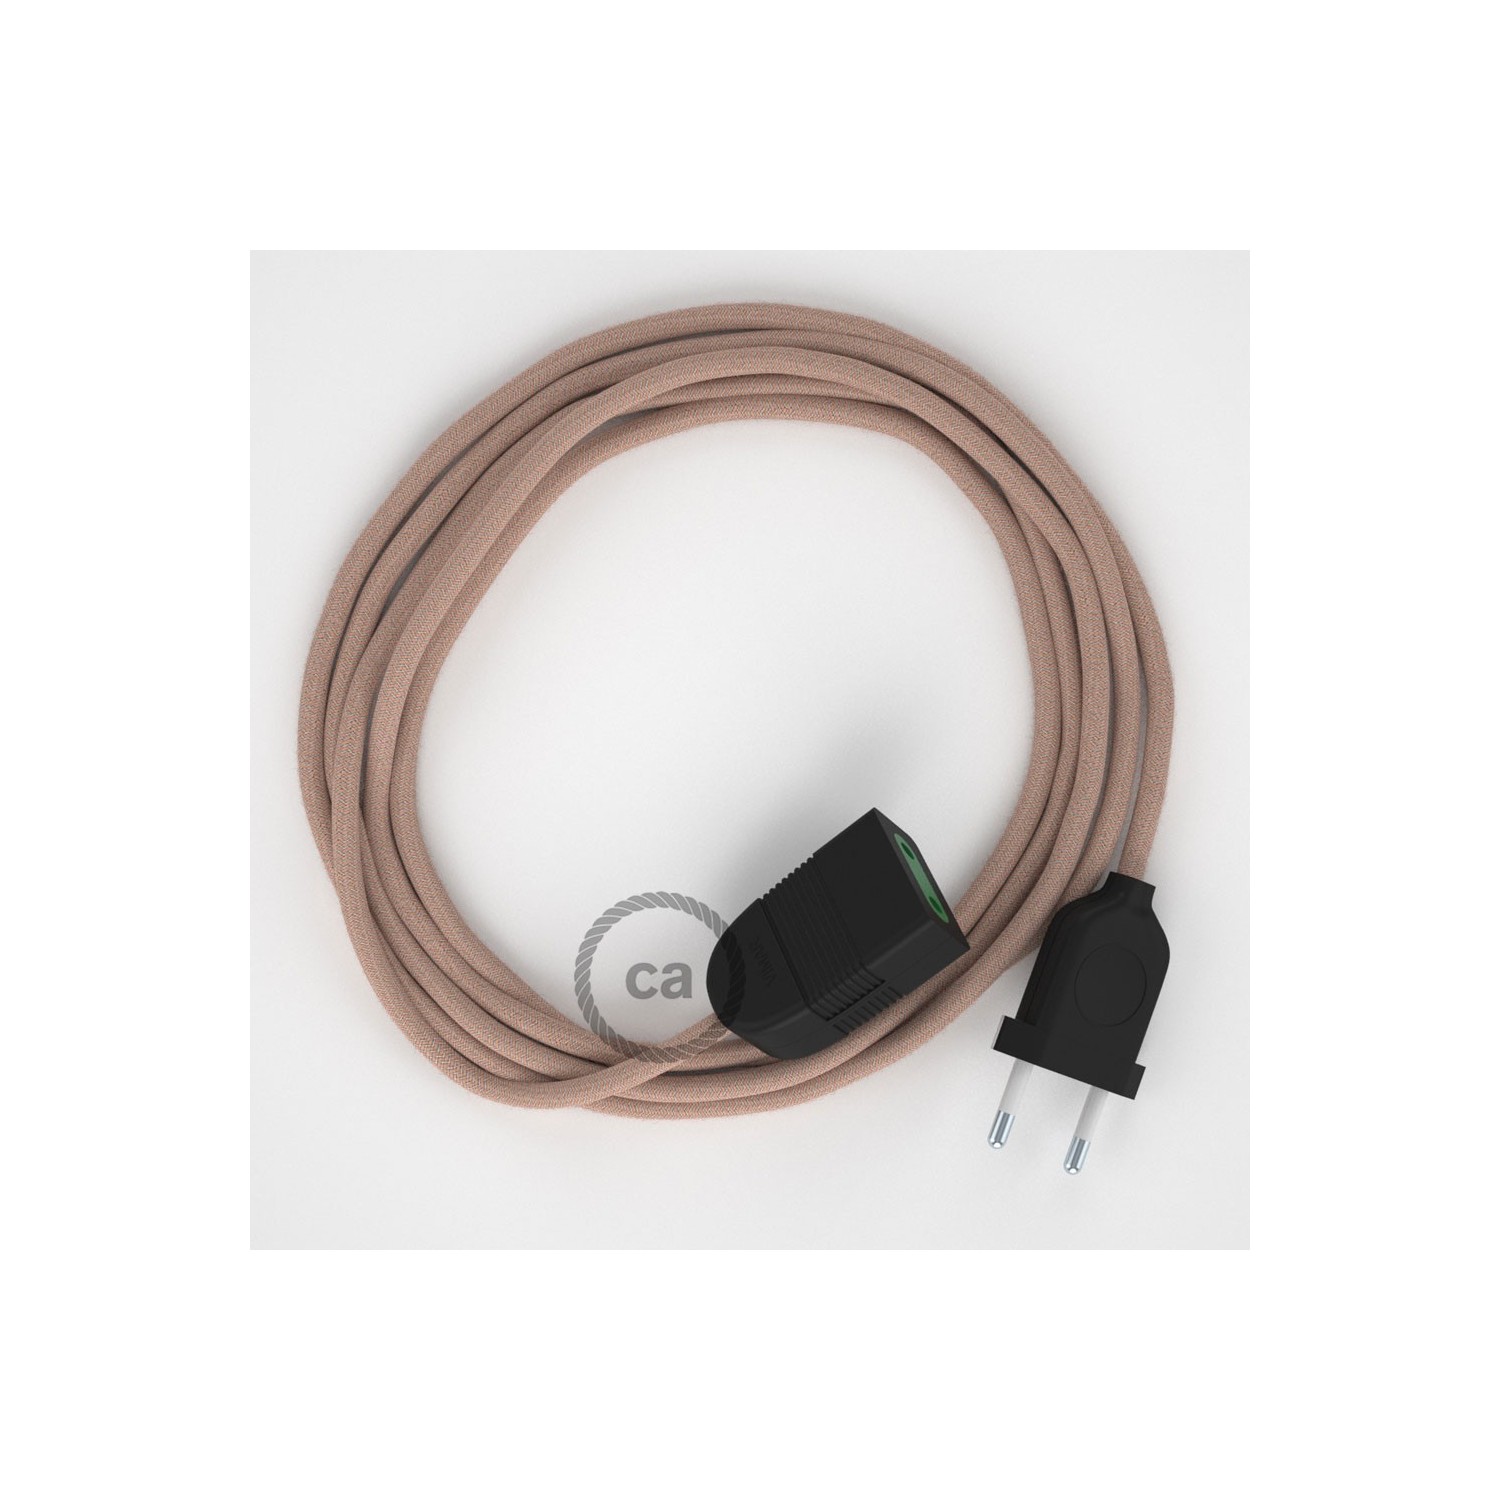 Podaljševalni kabel za napajanje (2P 10A) zigzag, rožnati naravni lan in bombaž RD71 - Made in Italy